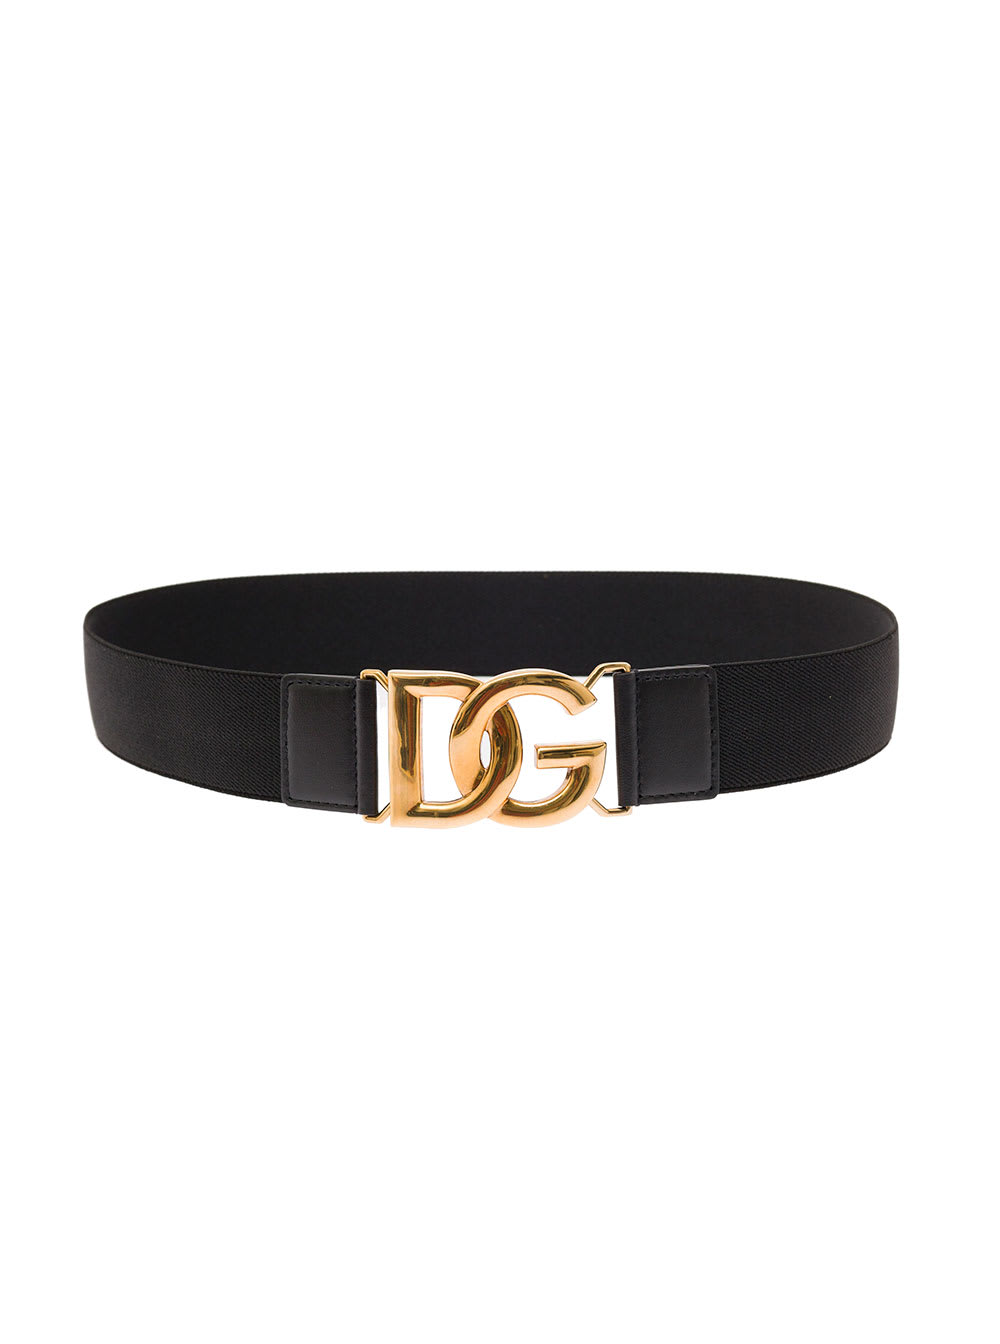 Dolce & Gabbana Elastic Dg Belt